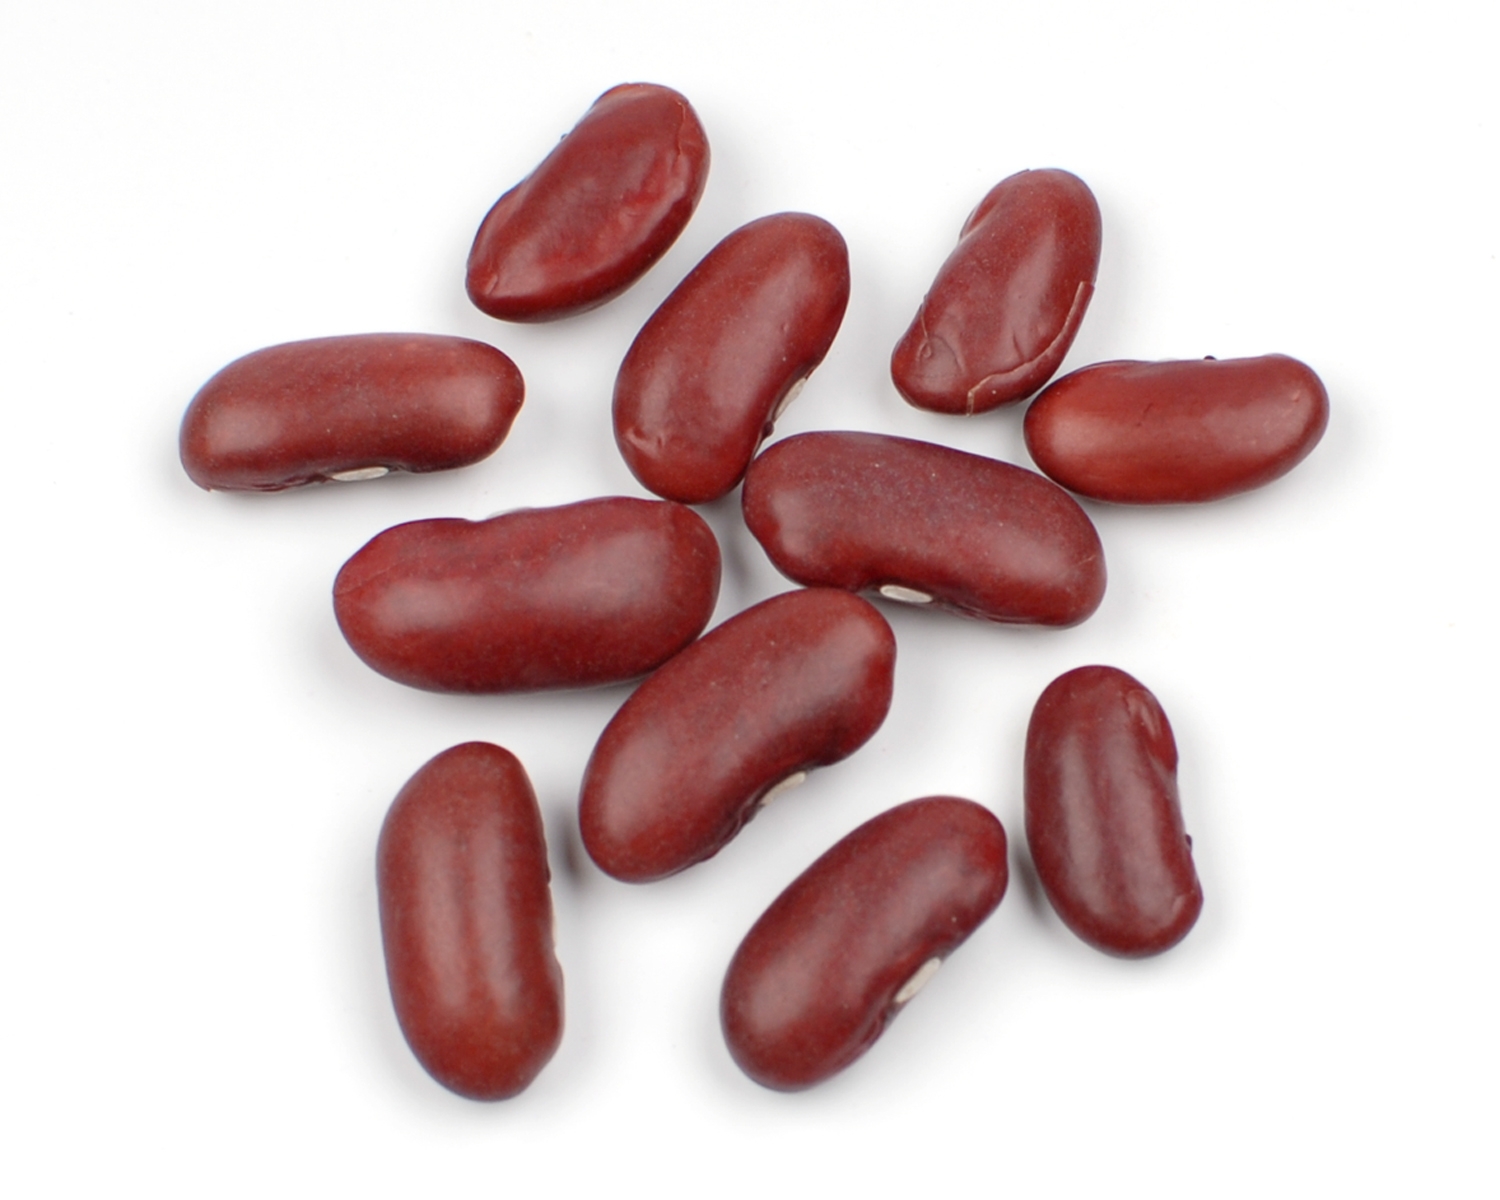 Unique beans collection digital. Bean clipart kidney bean